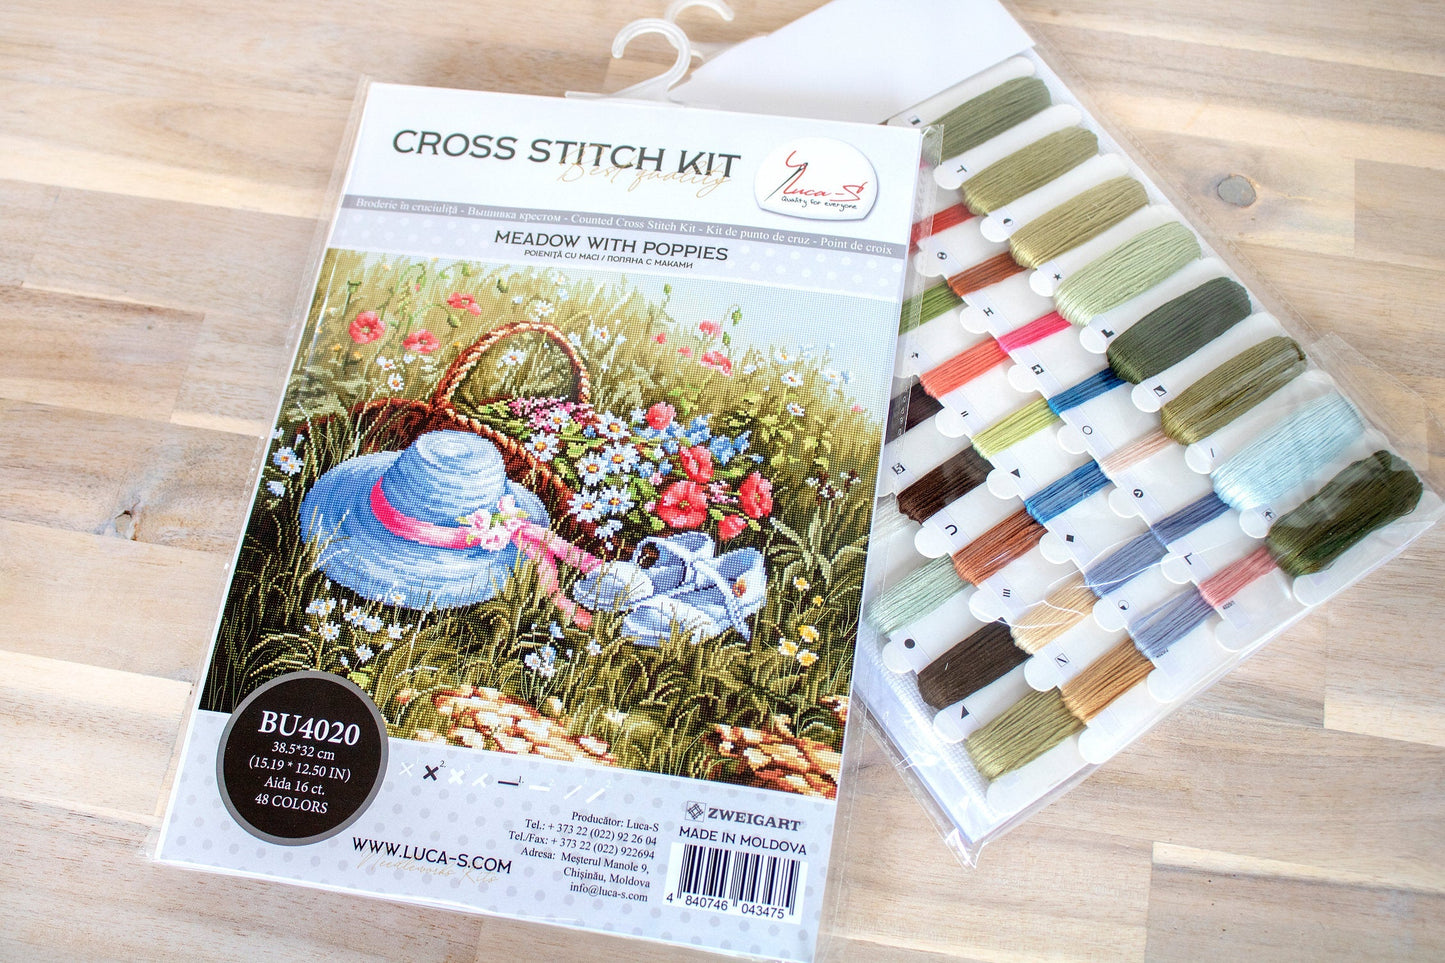 Cross Stitch Kit Luca-S - Meadow with Poppies, BU4020